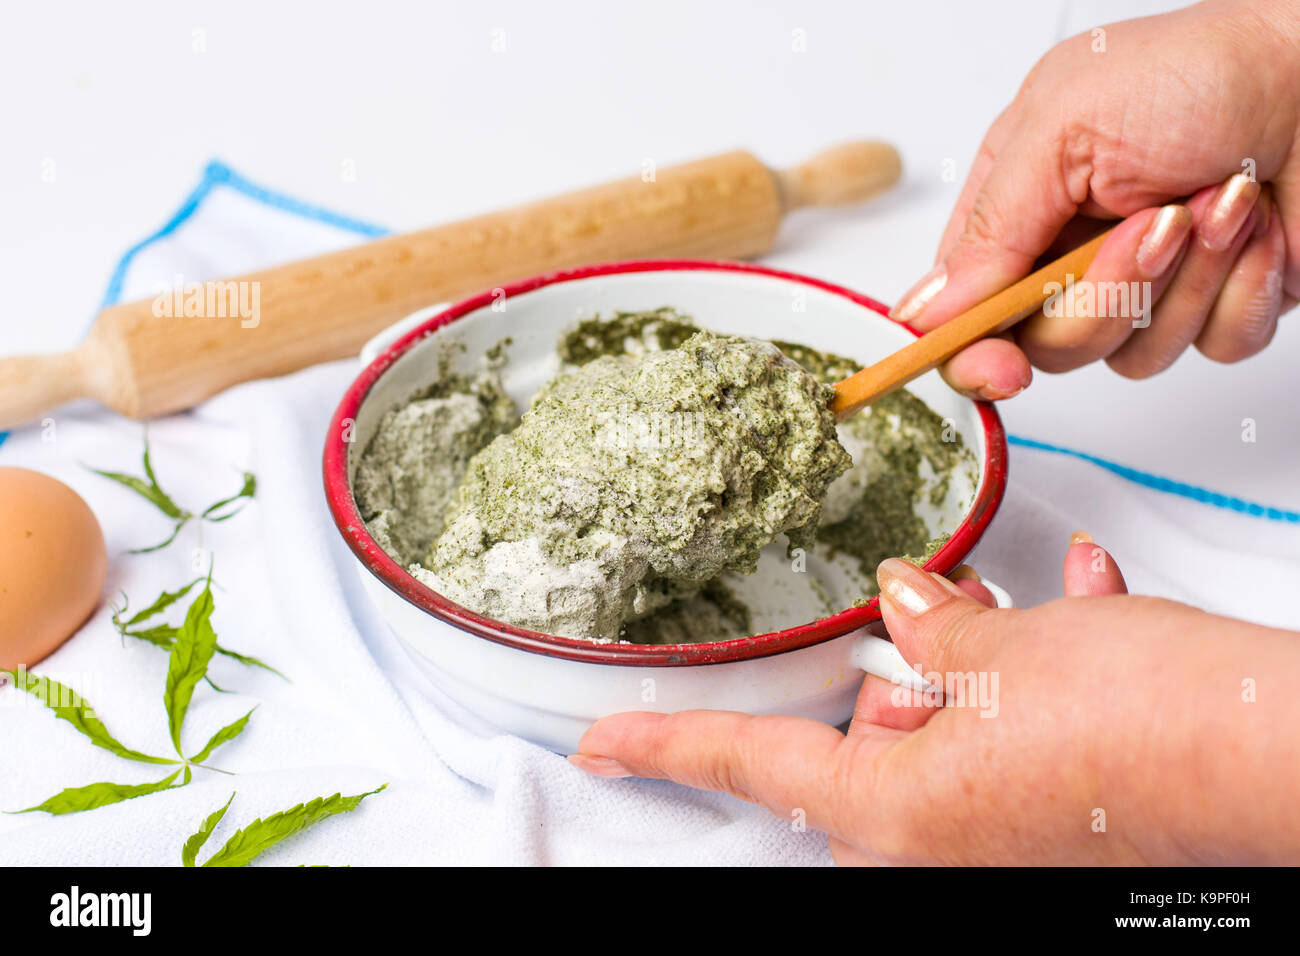 Femme préparant pâte de la marijuana et de la farine de blé dans un bol Banque D'Images